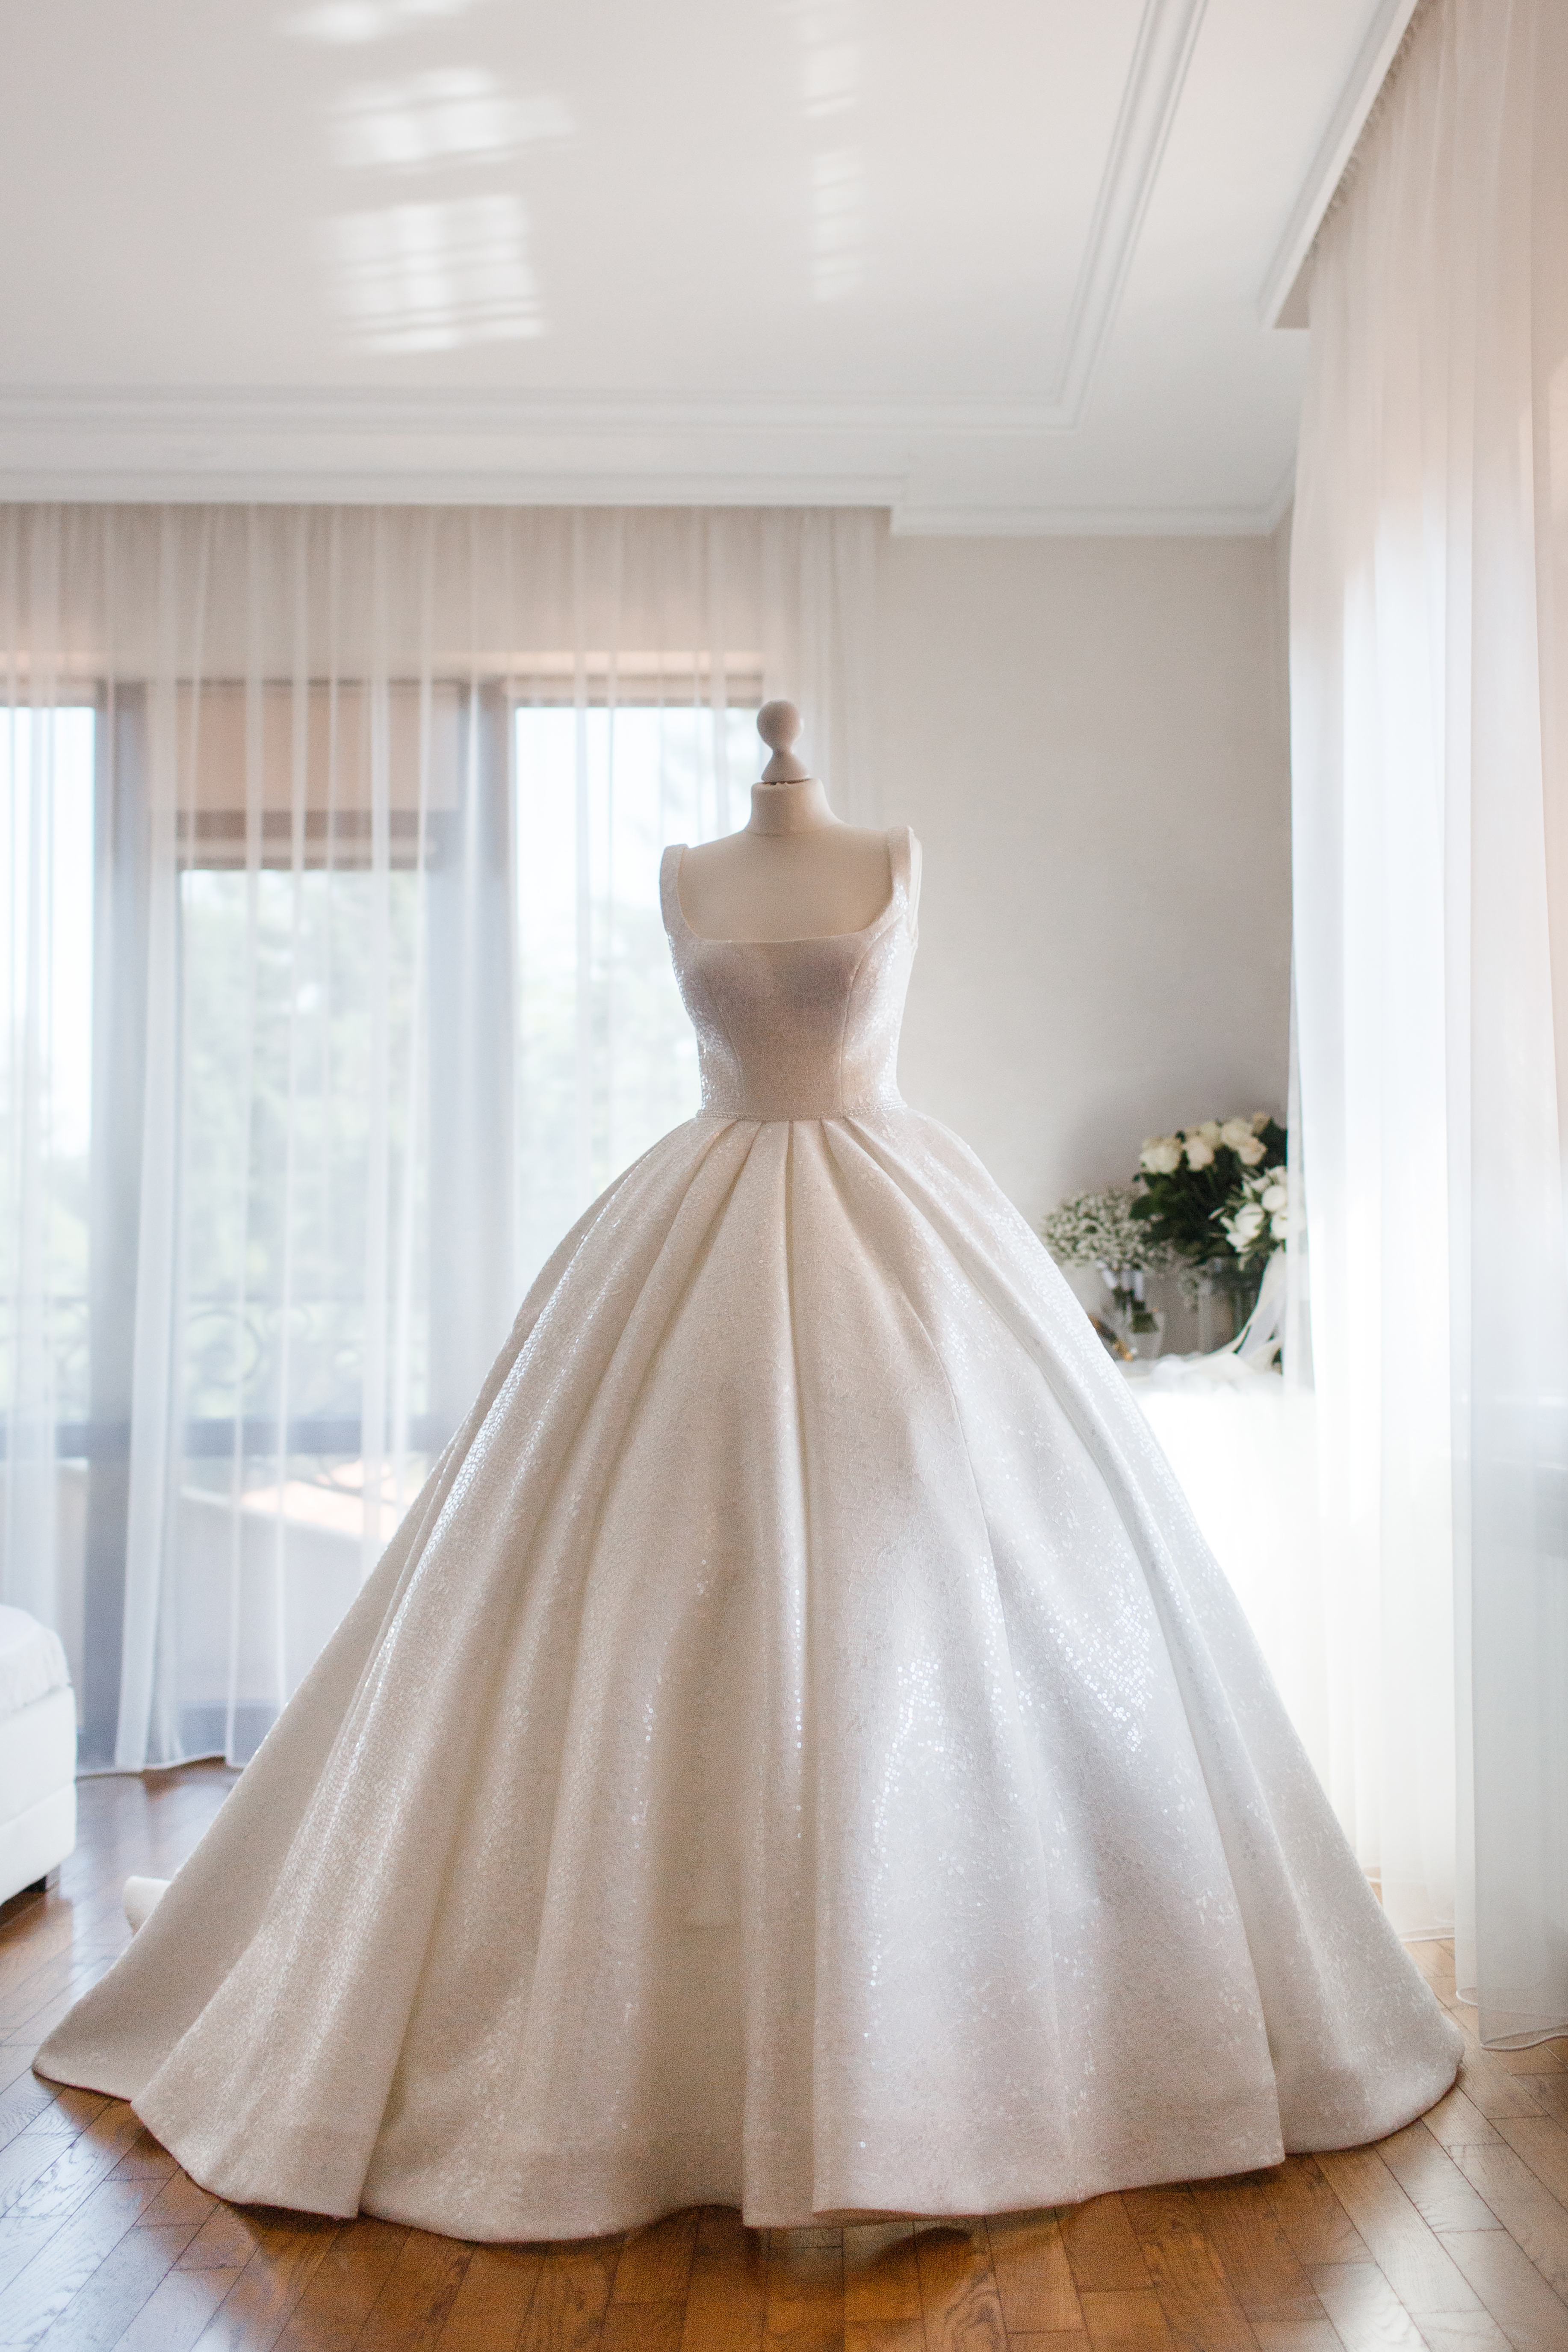 Une robe de mariée sur un mannequin dans un magasin | Source : Getty Images